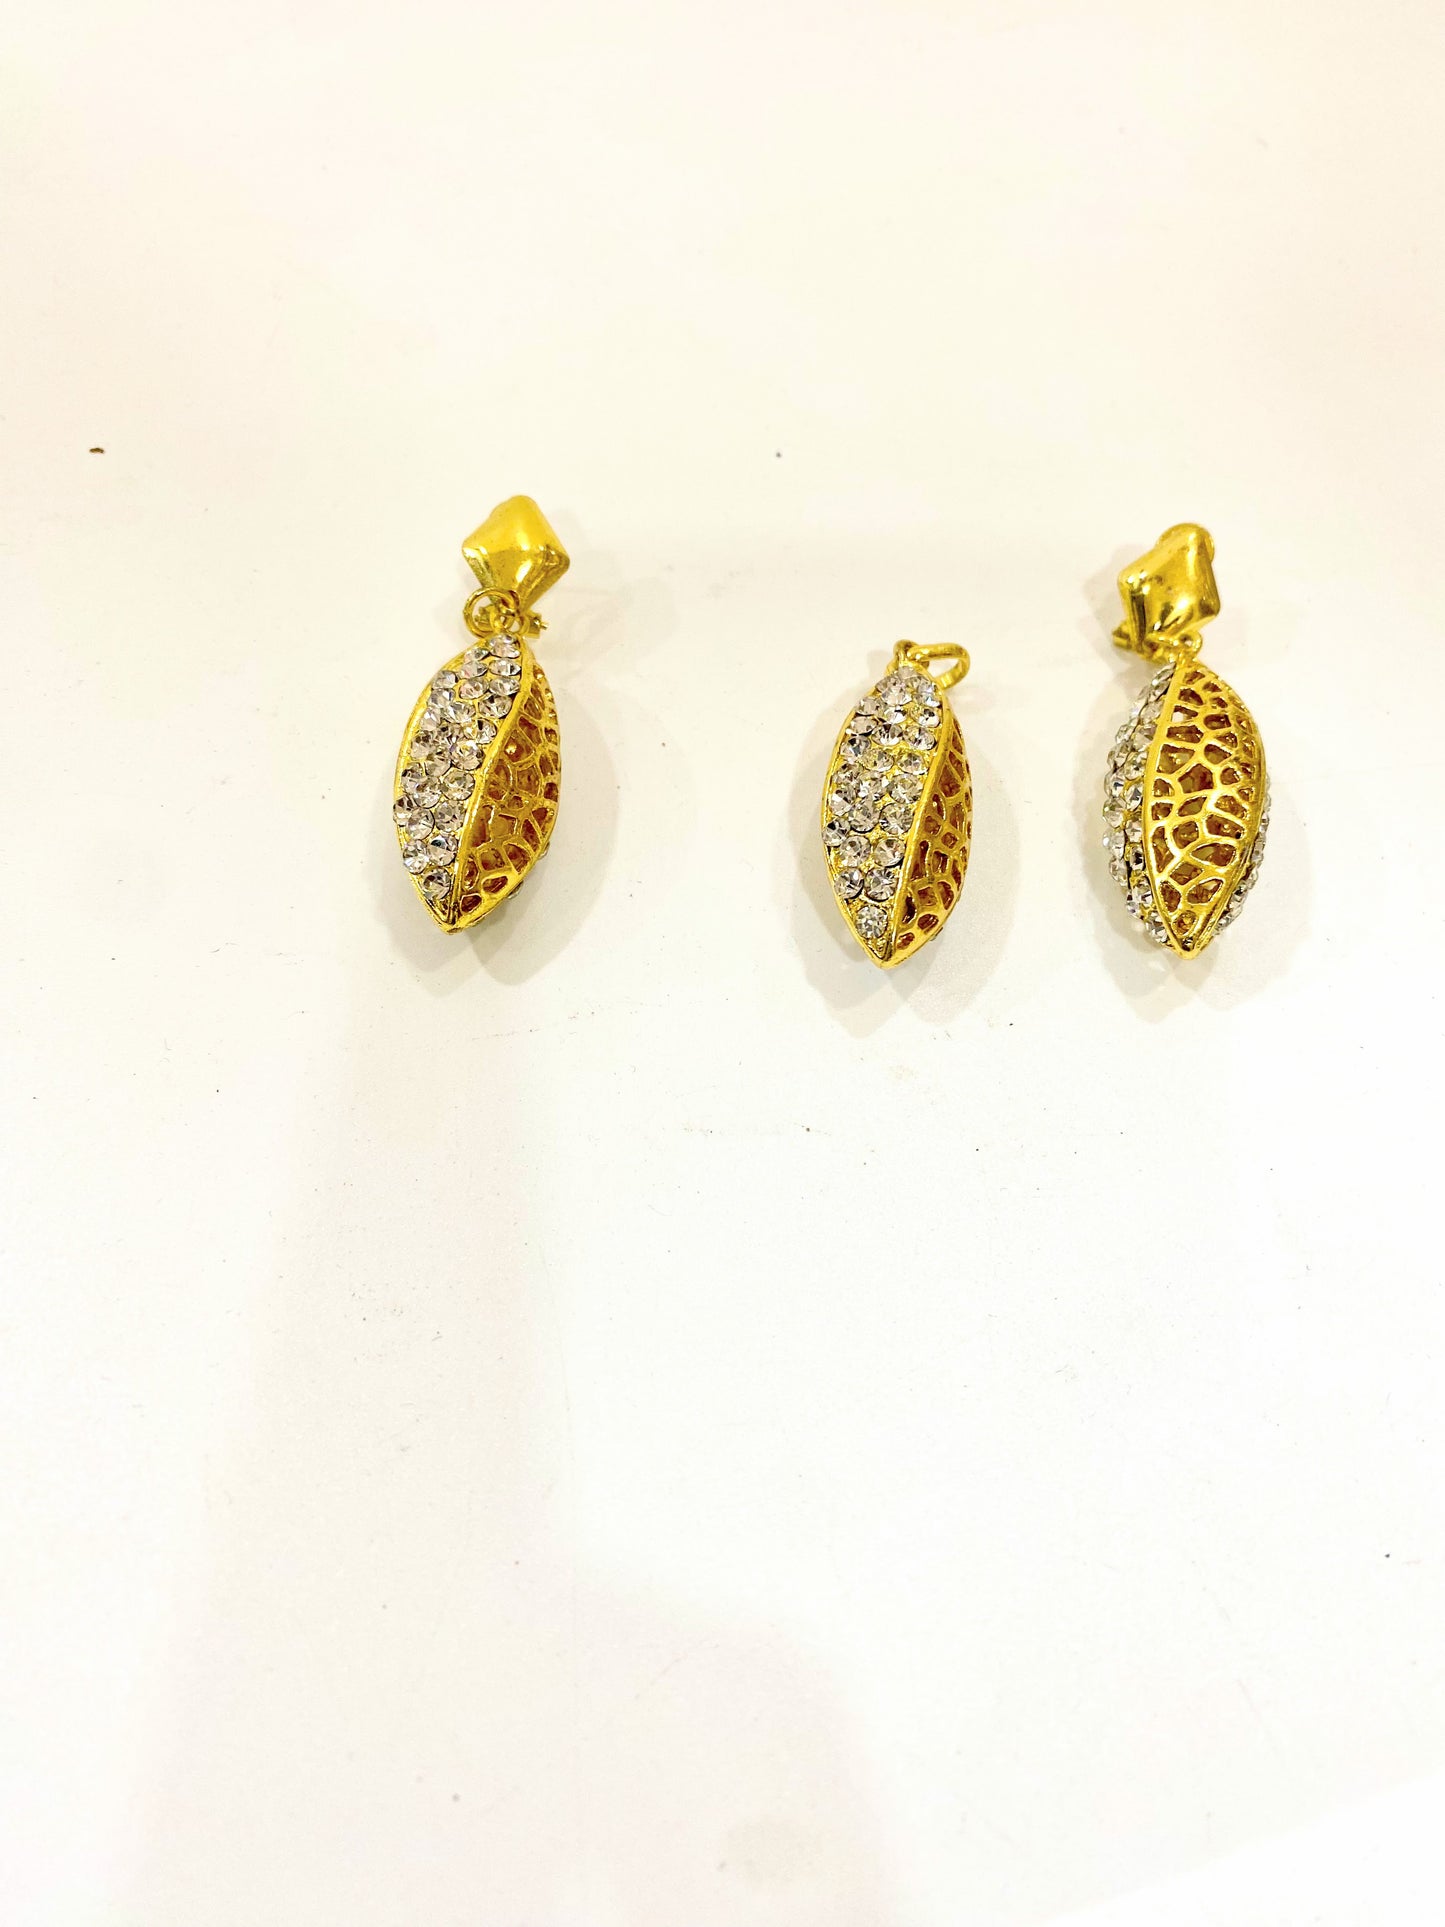 Earrings and pendant set